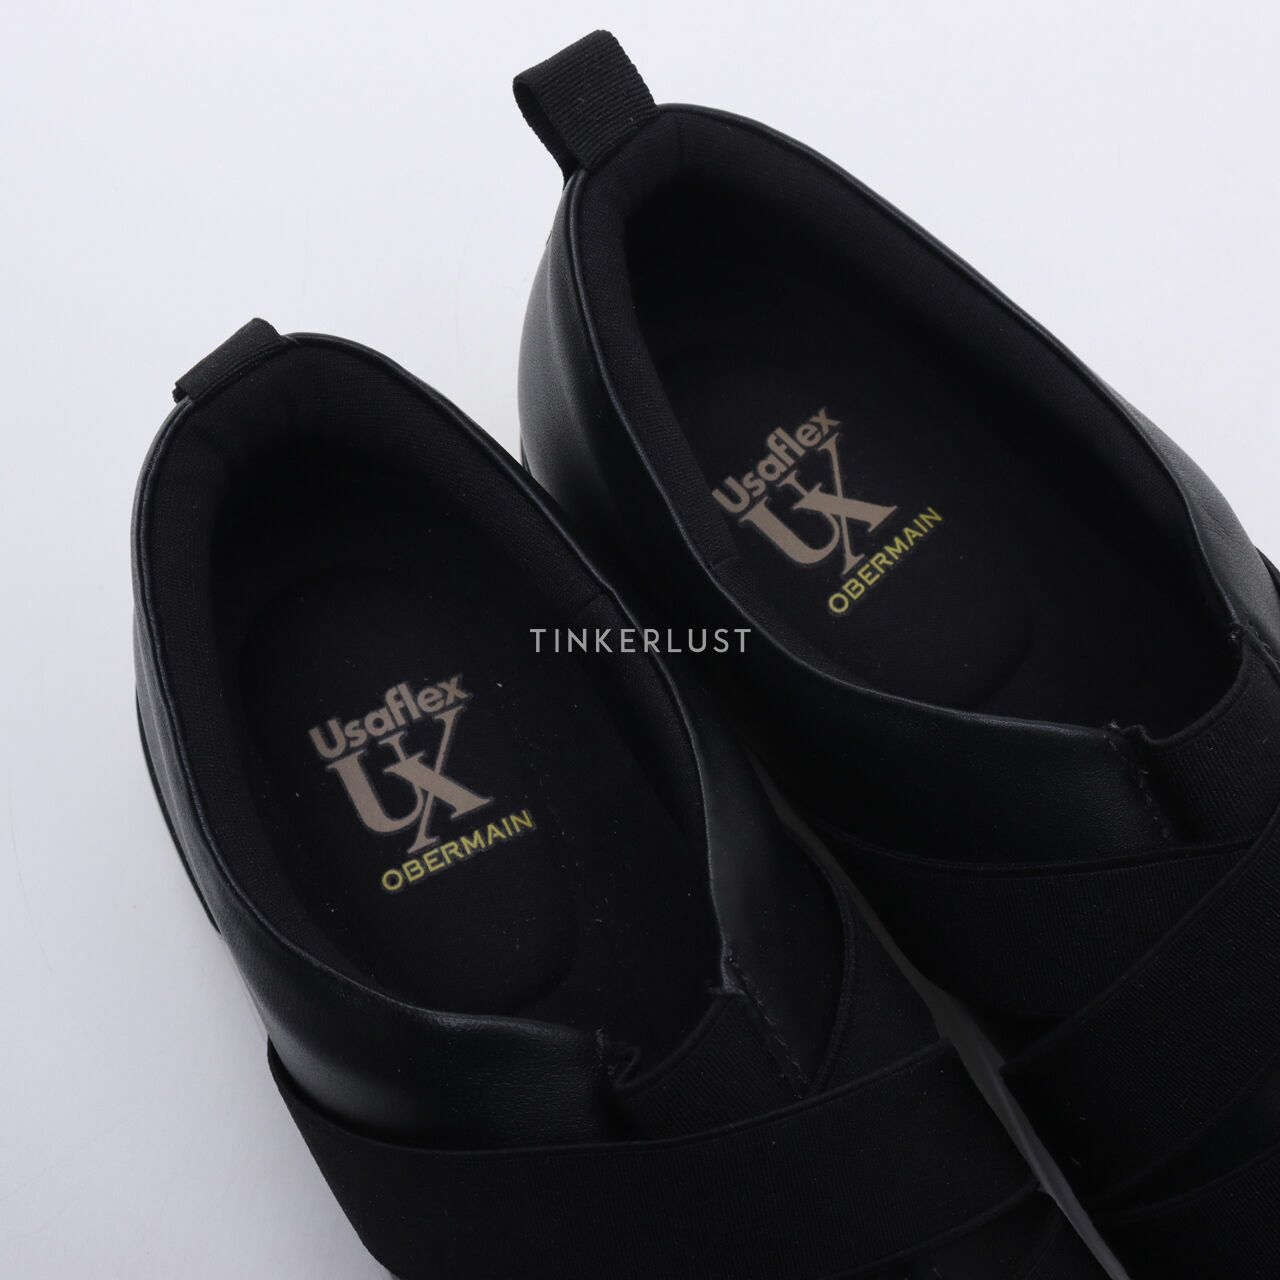 Obermain x Usaflex Black Sneakers